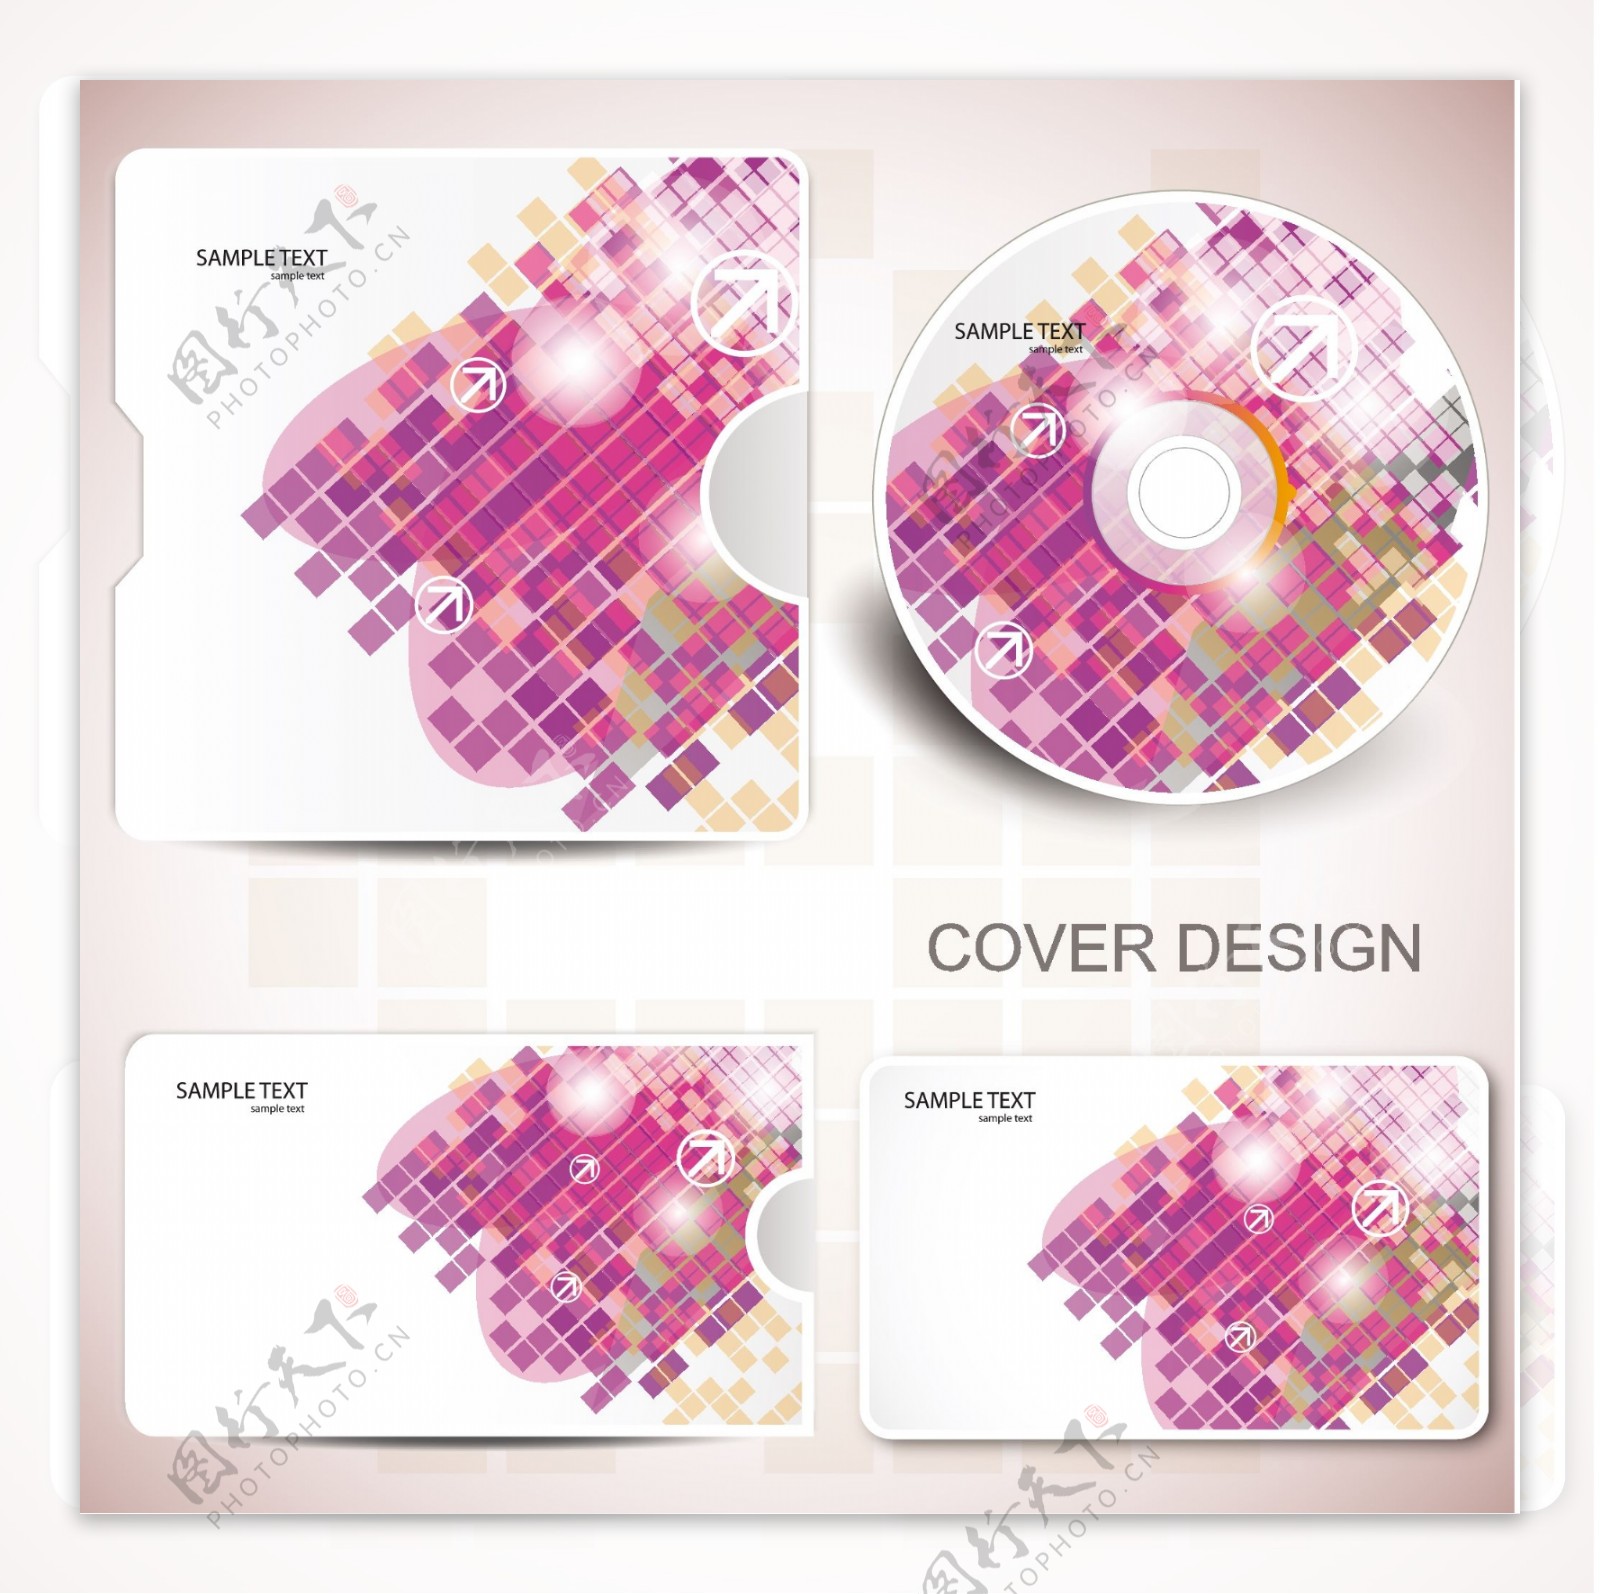 炫彩抽象图案cd包装矢量素材